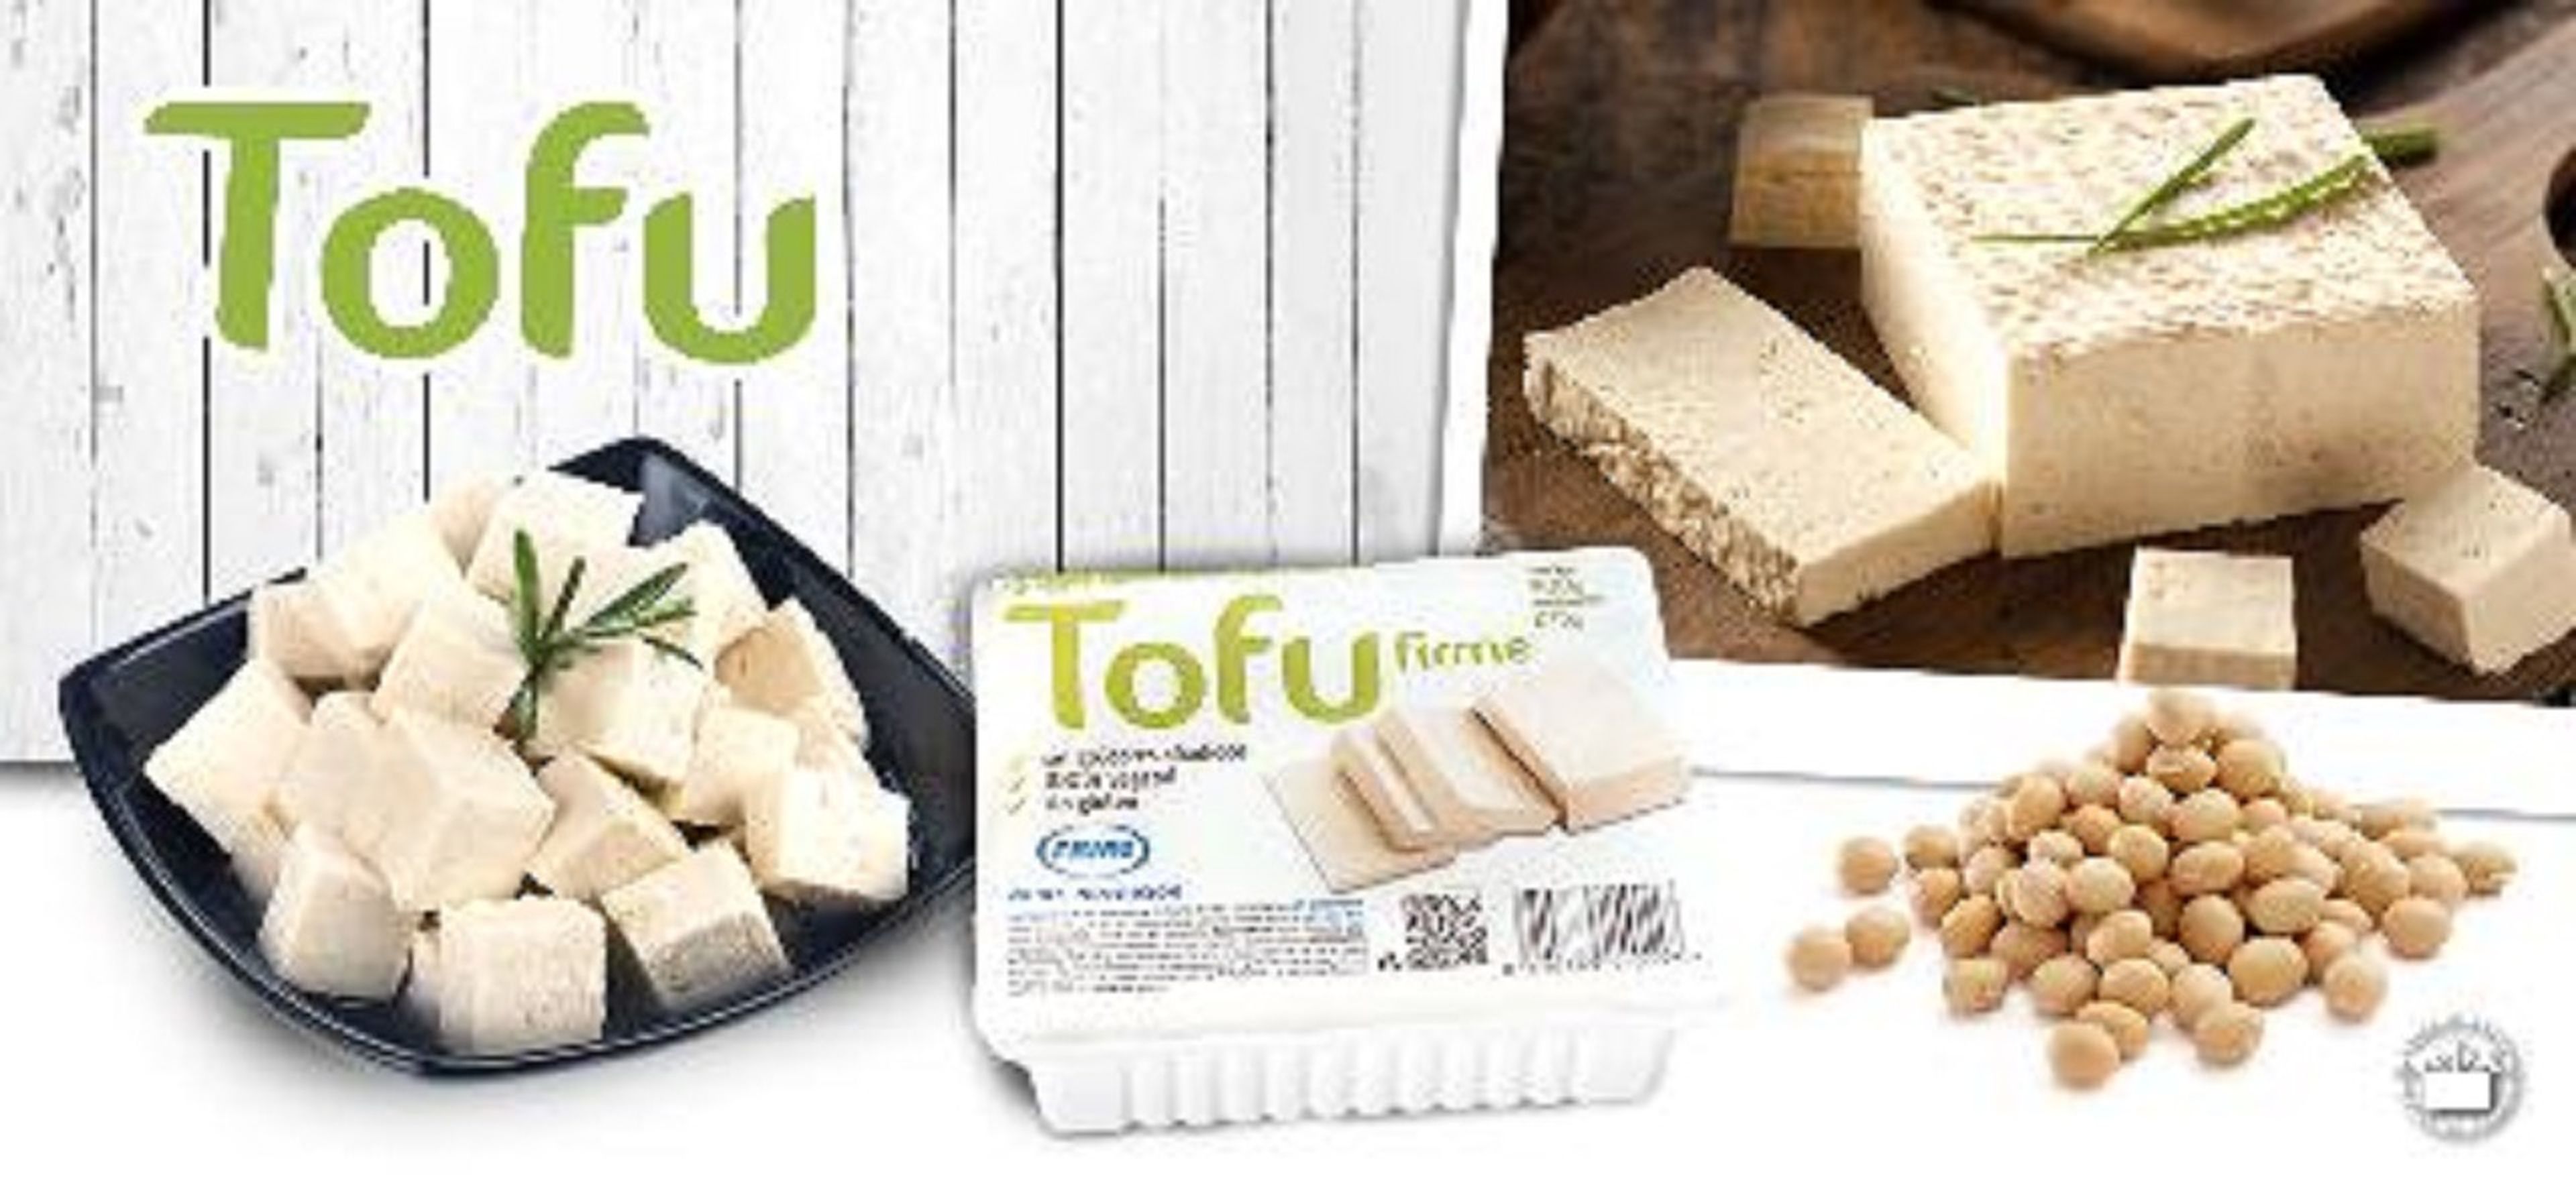 Tofu de Mercadona